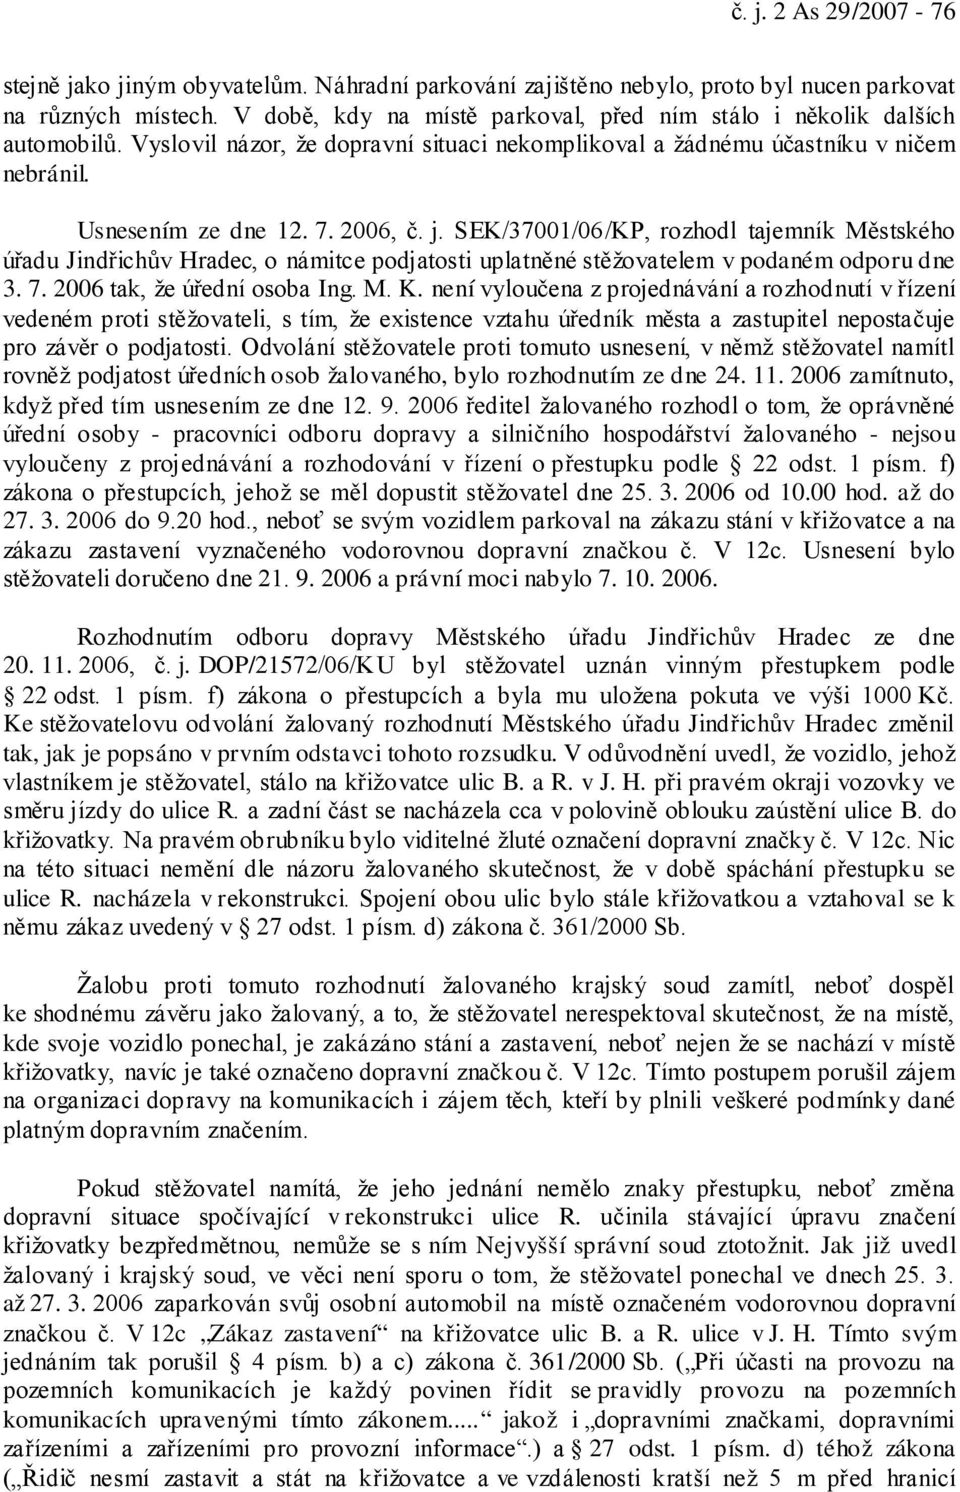 SEK/37001/06/KP, rozhodl tajemník Městského úřadu Jindřichův Hradec, o námitce podjatosti uplatněné stěžovatelem v podaném odporu dne 3. 7. 2006 tak, že úřední osoba Ing. M. K.